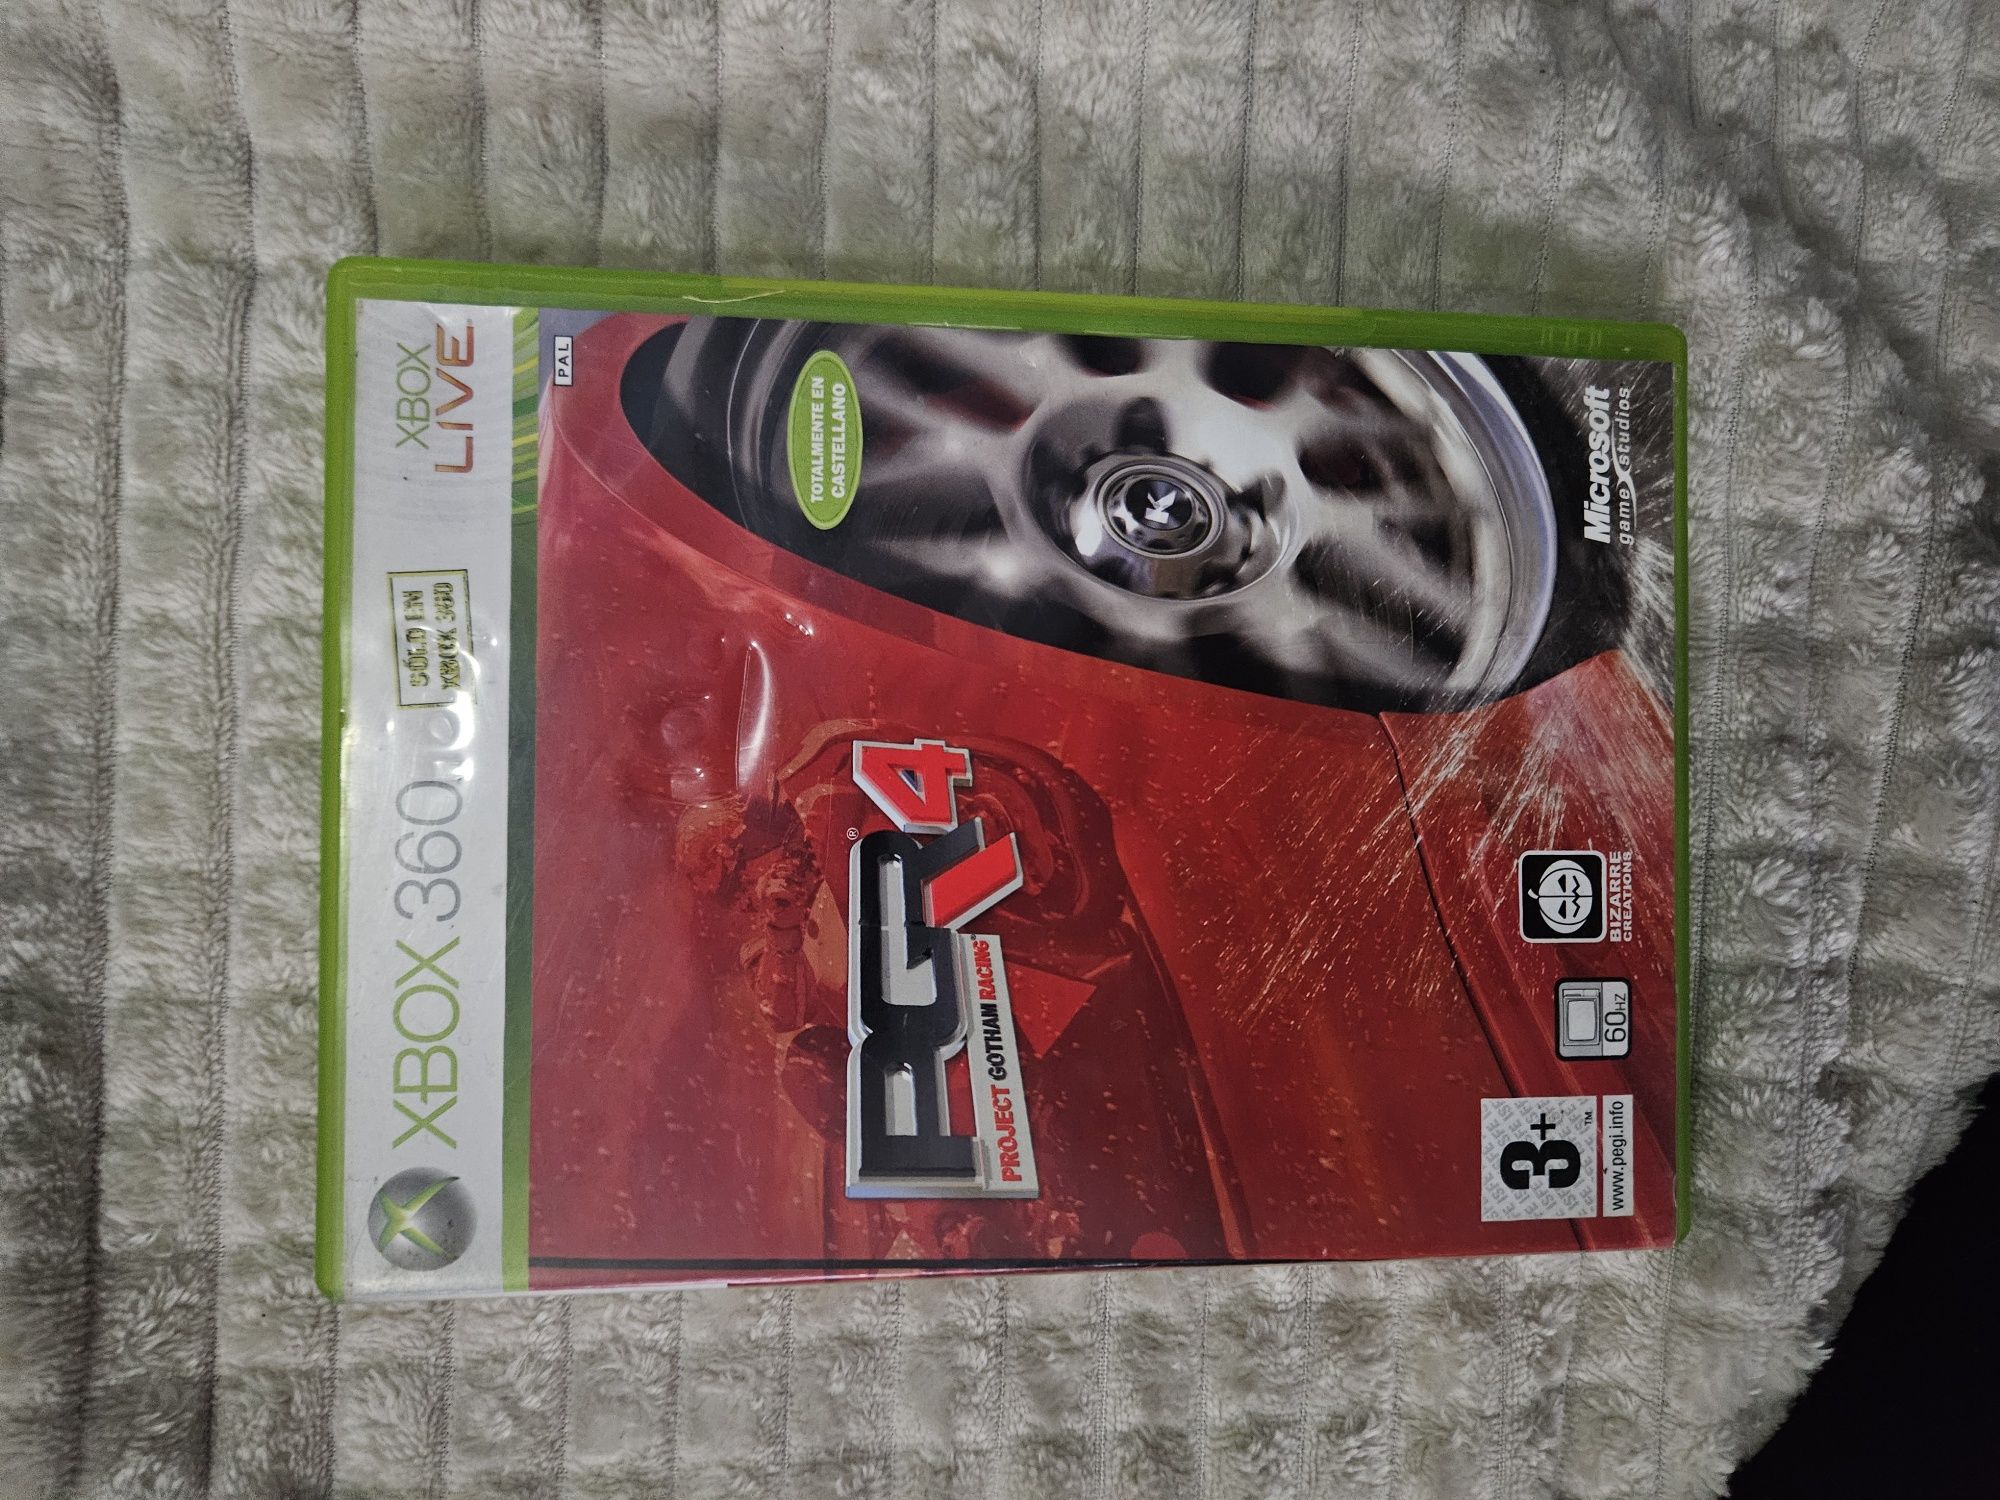 PGR 4 gra Xbox 360 wyścigi